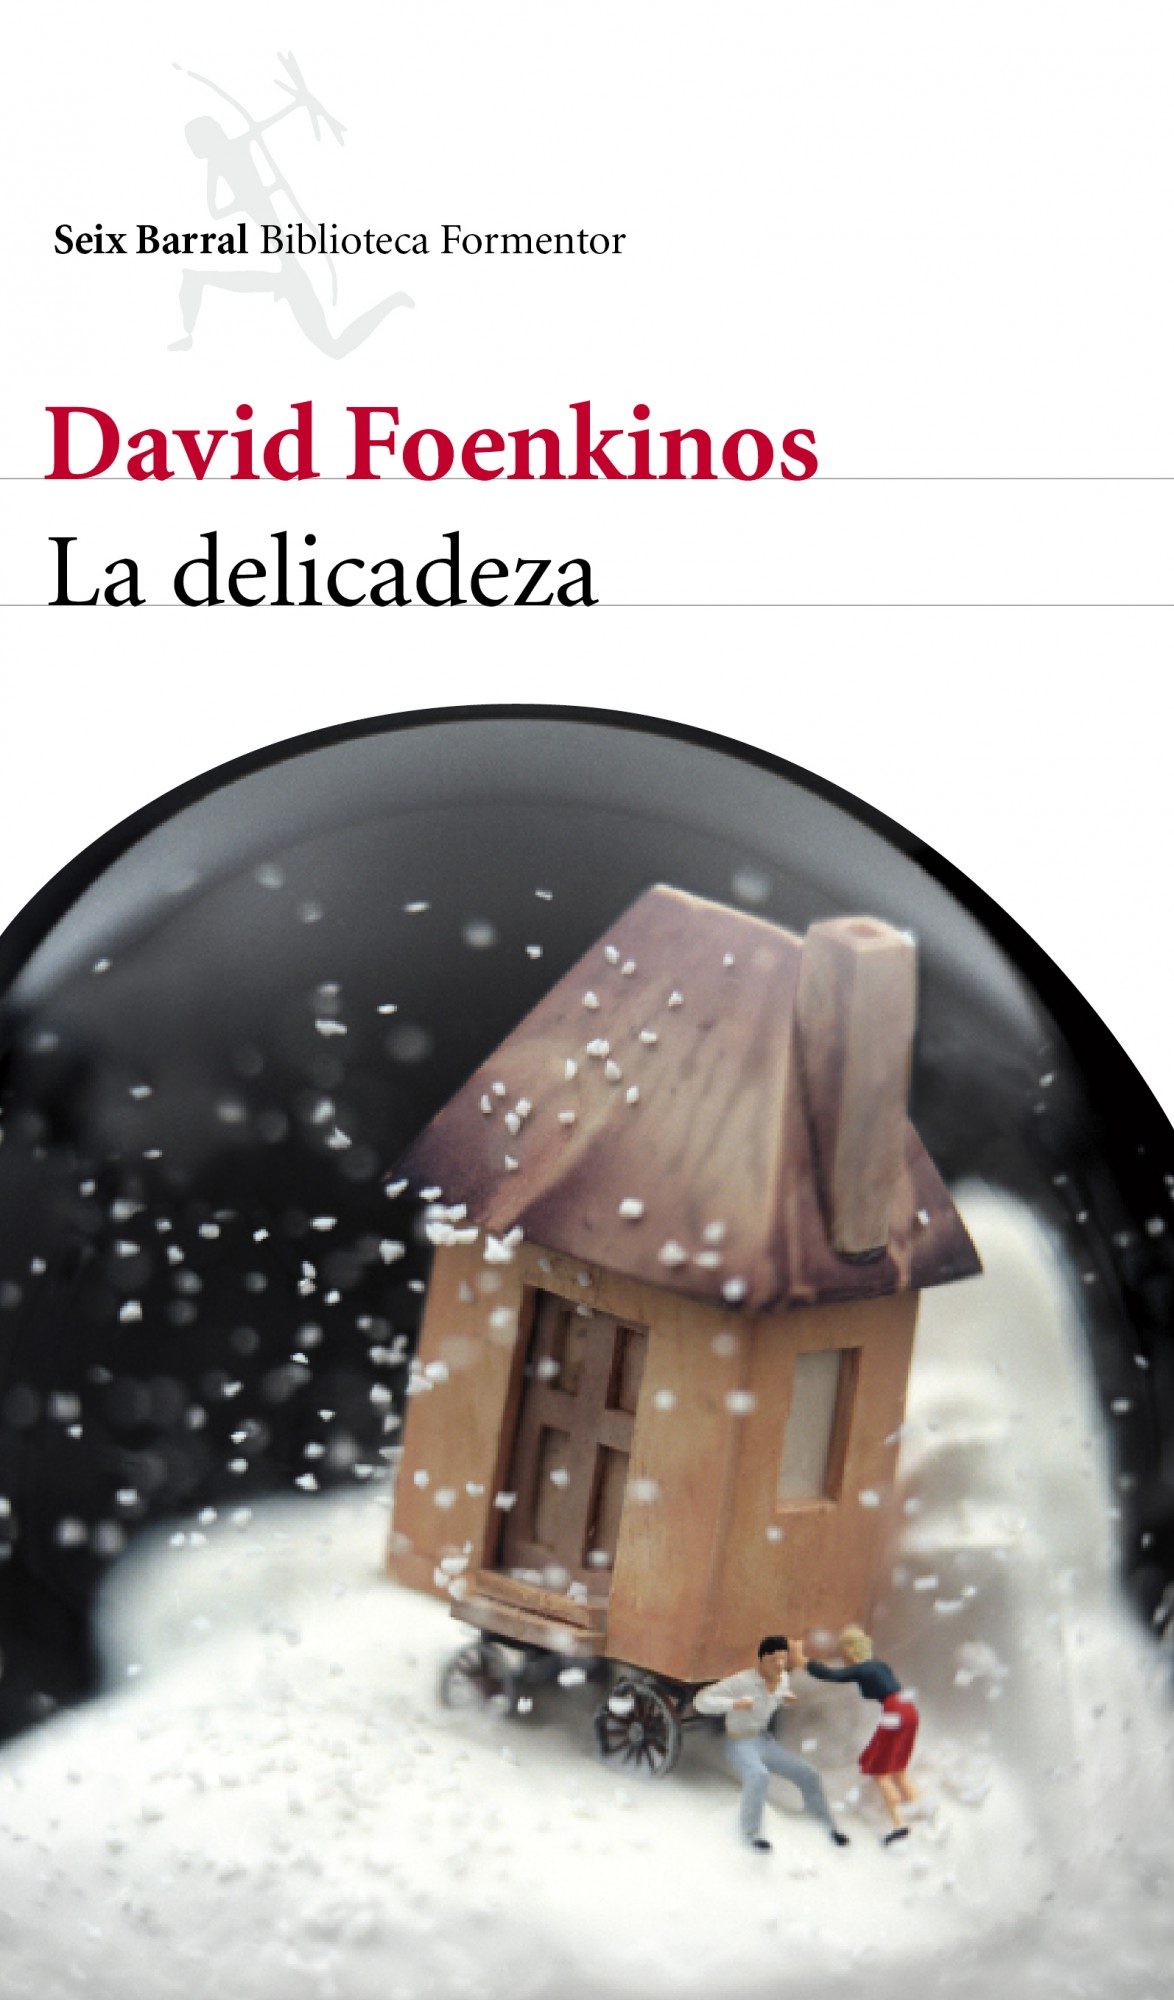 Portada libro La Delicadeza de David Foenkinos